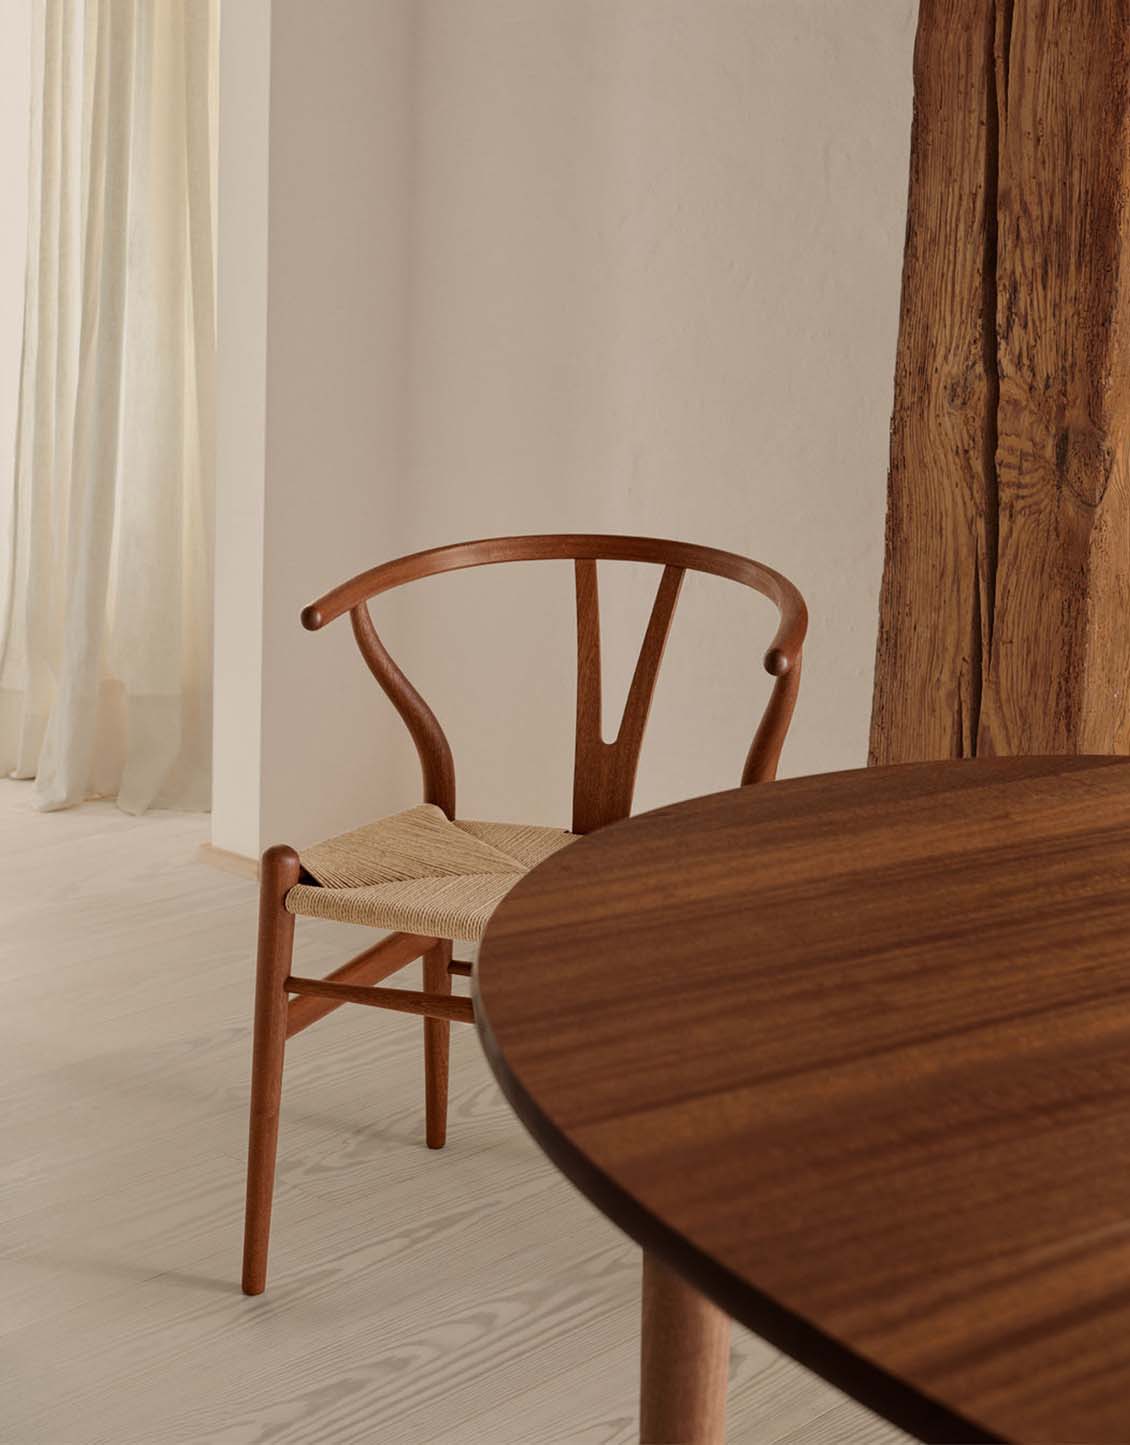 Hans Wegner Chairs - Furniture Tile